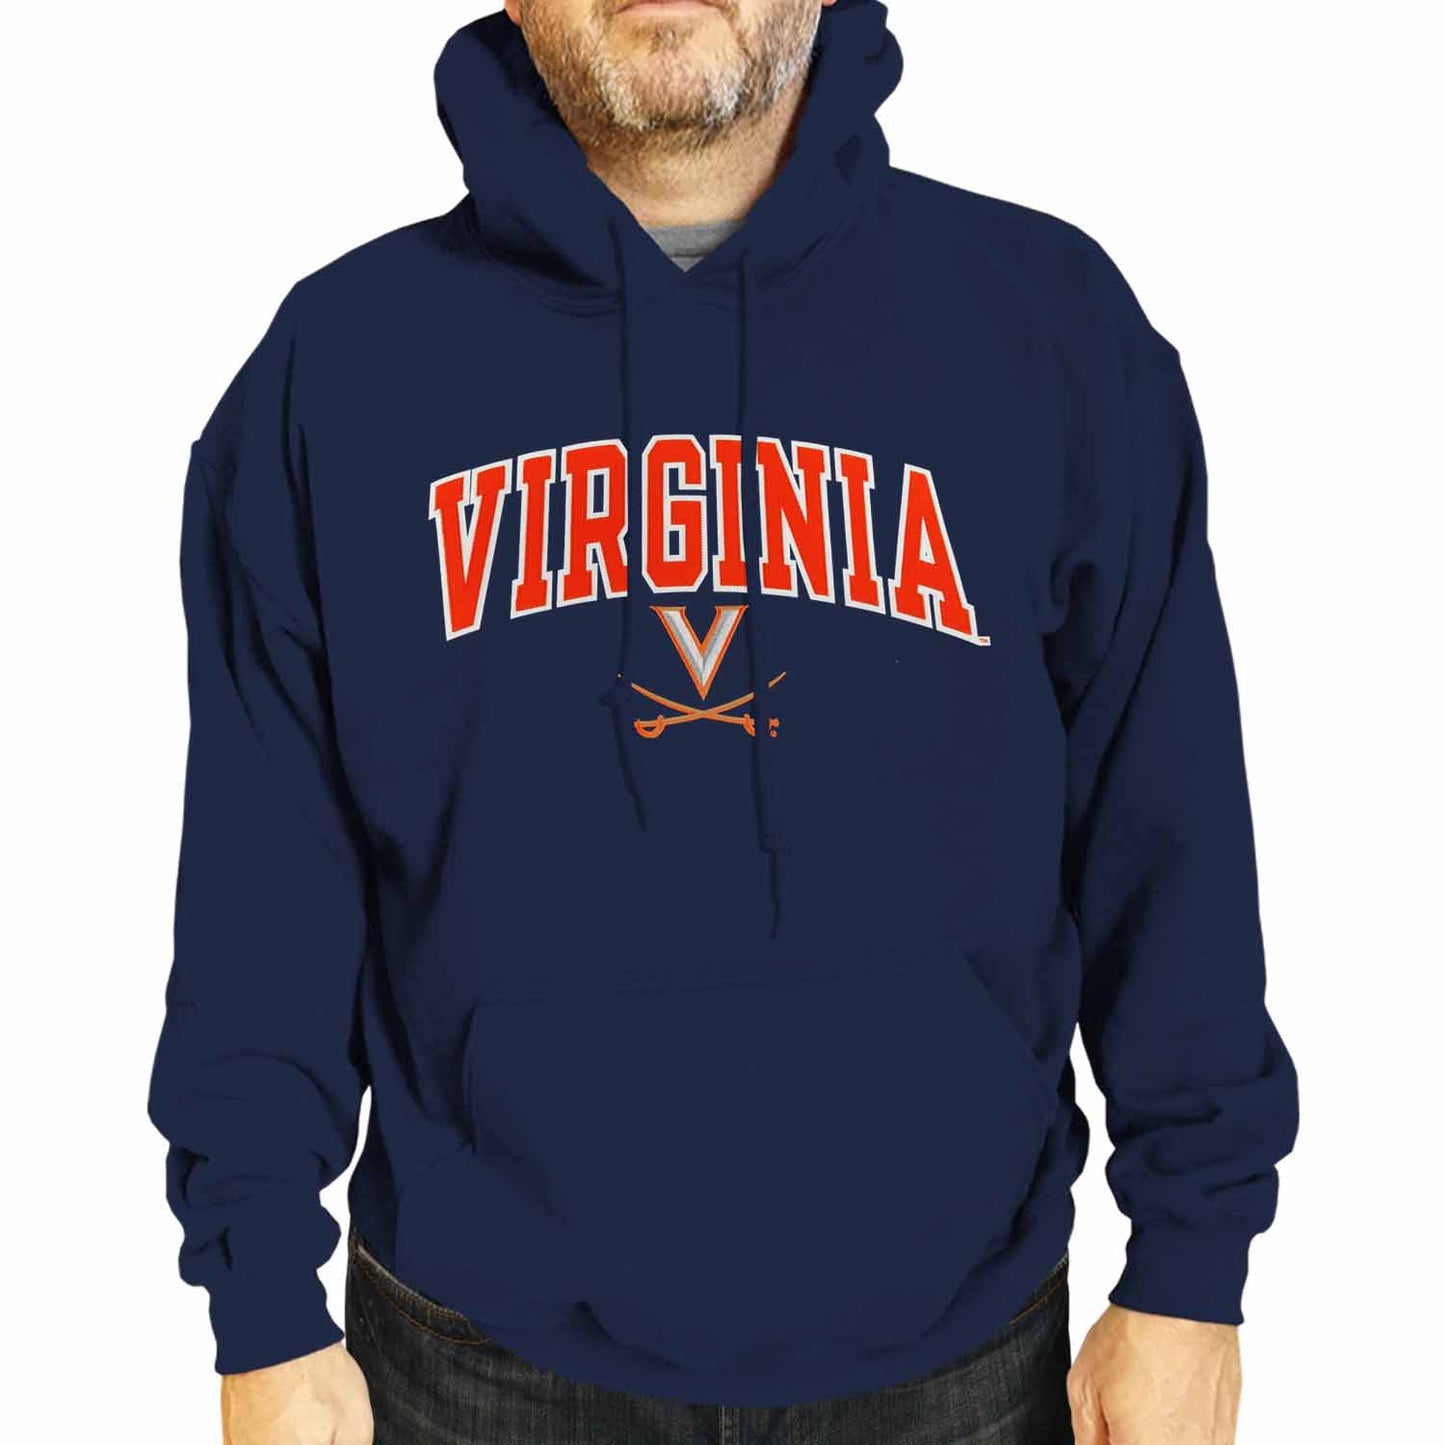 Virginia Cavaliers NCAA Adult Tackle Twill Hooded Sweatshirt - Navy